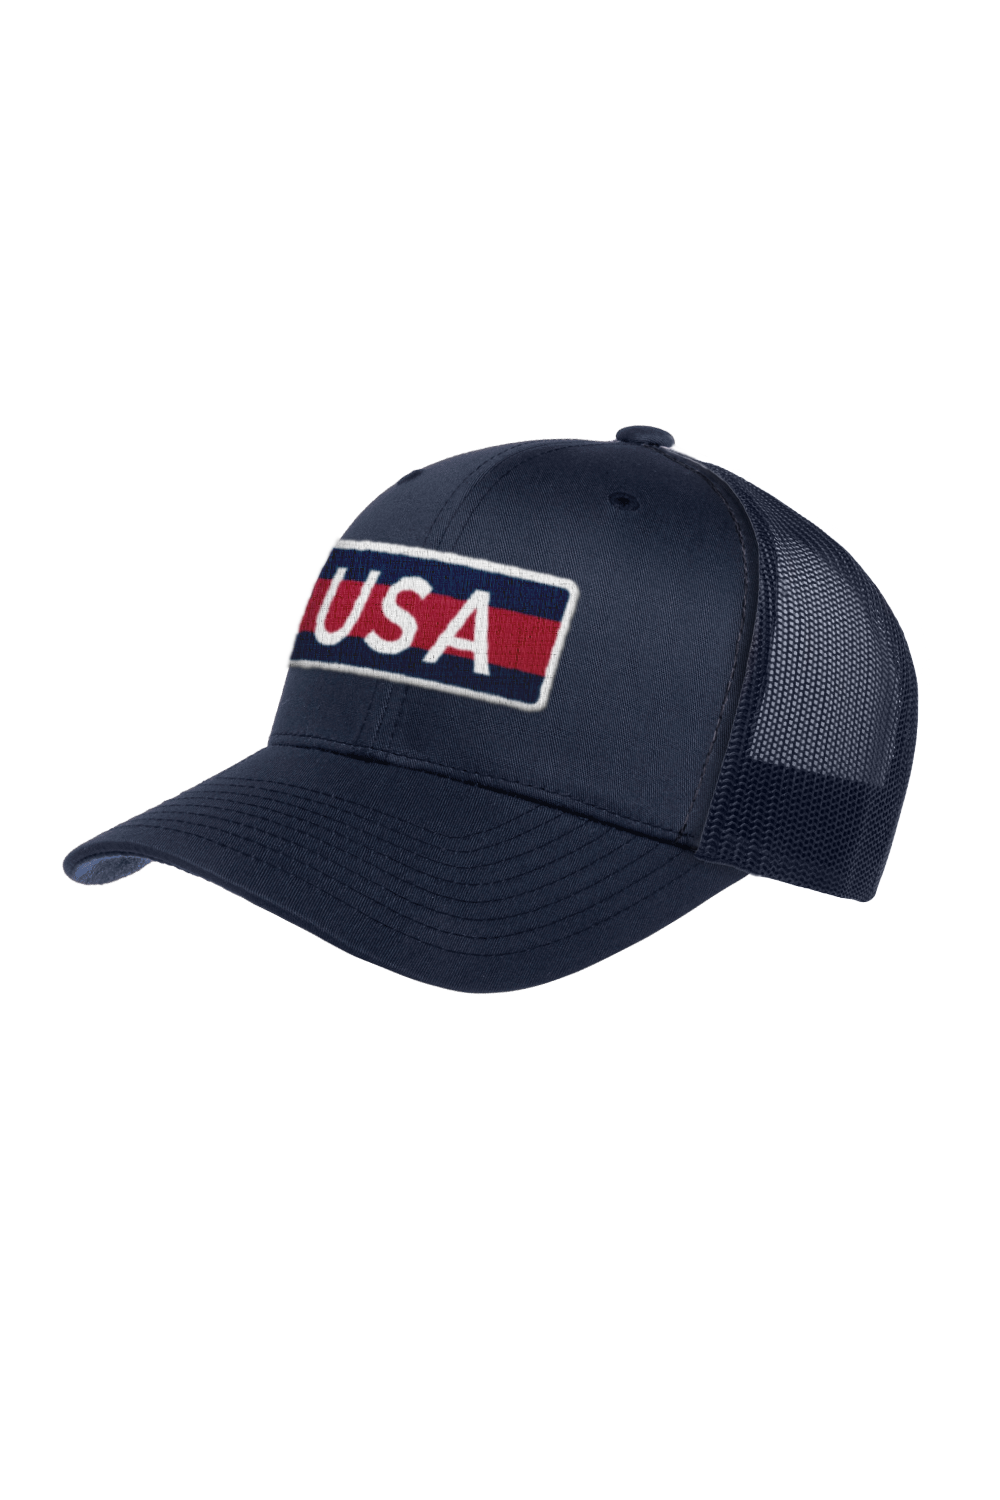 USNT Trucker Hat (Navy) (Fans)